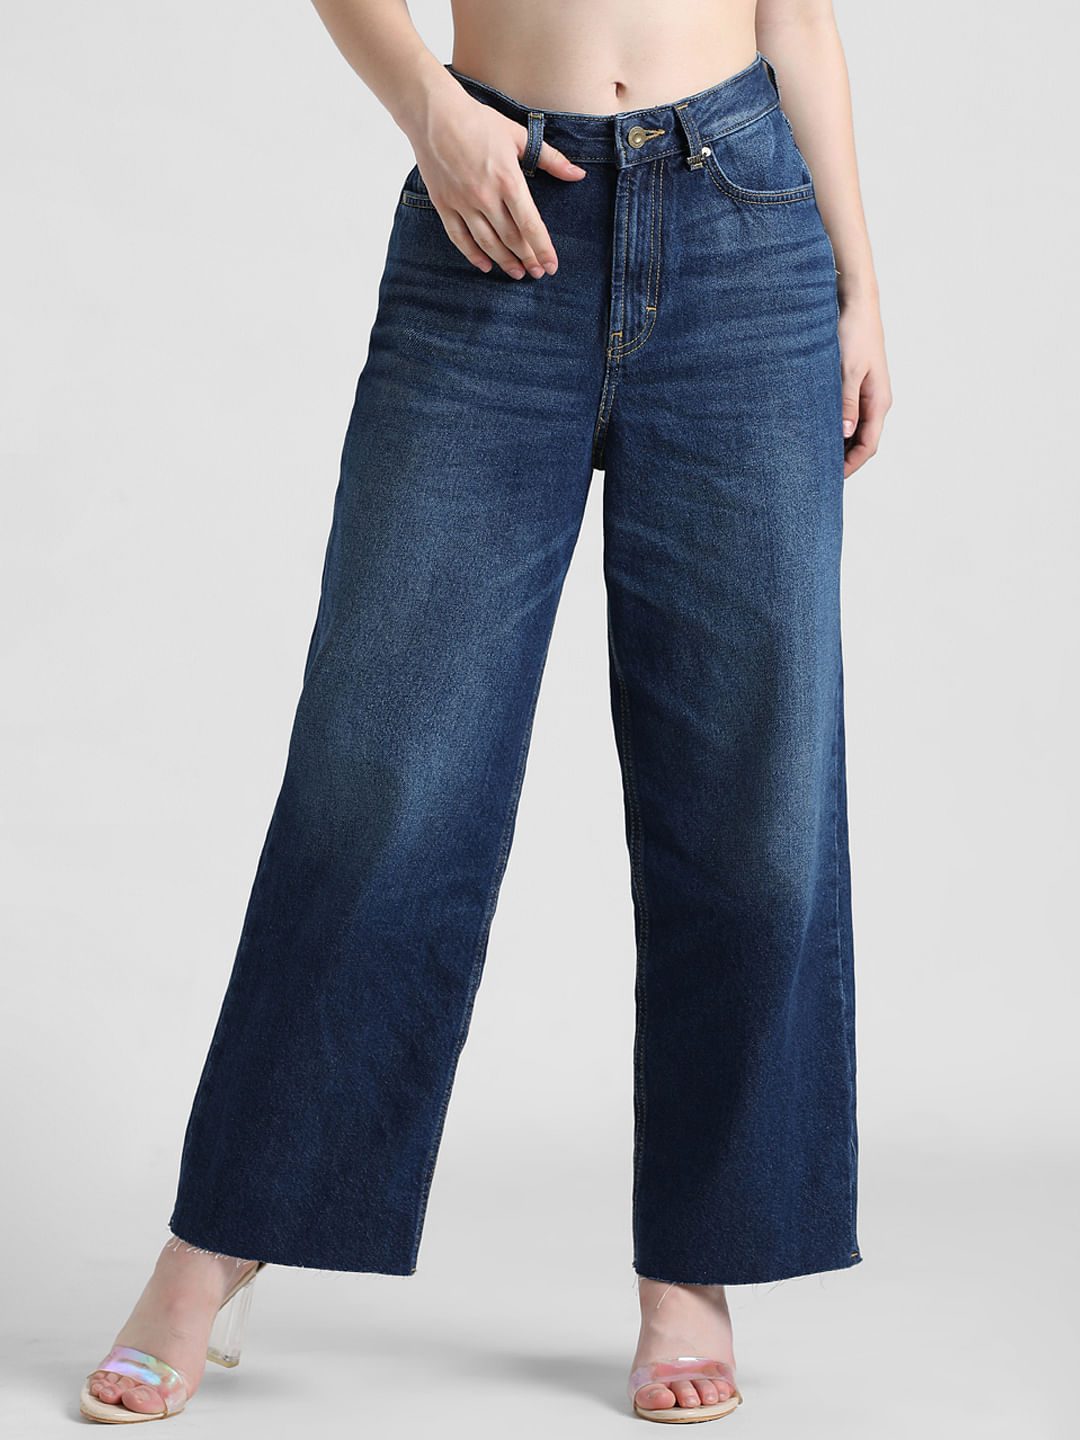 Men's Jeans - Denim Clothing | Emporio Armani